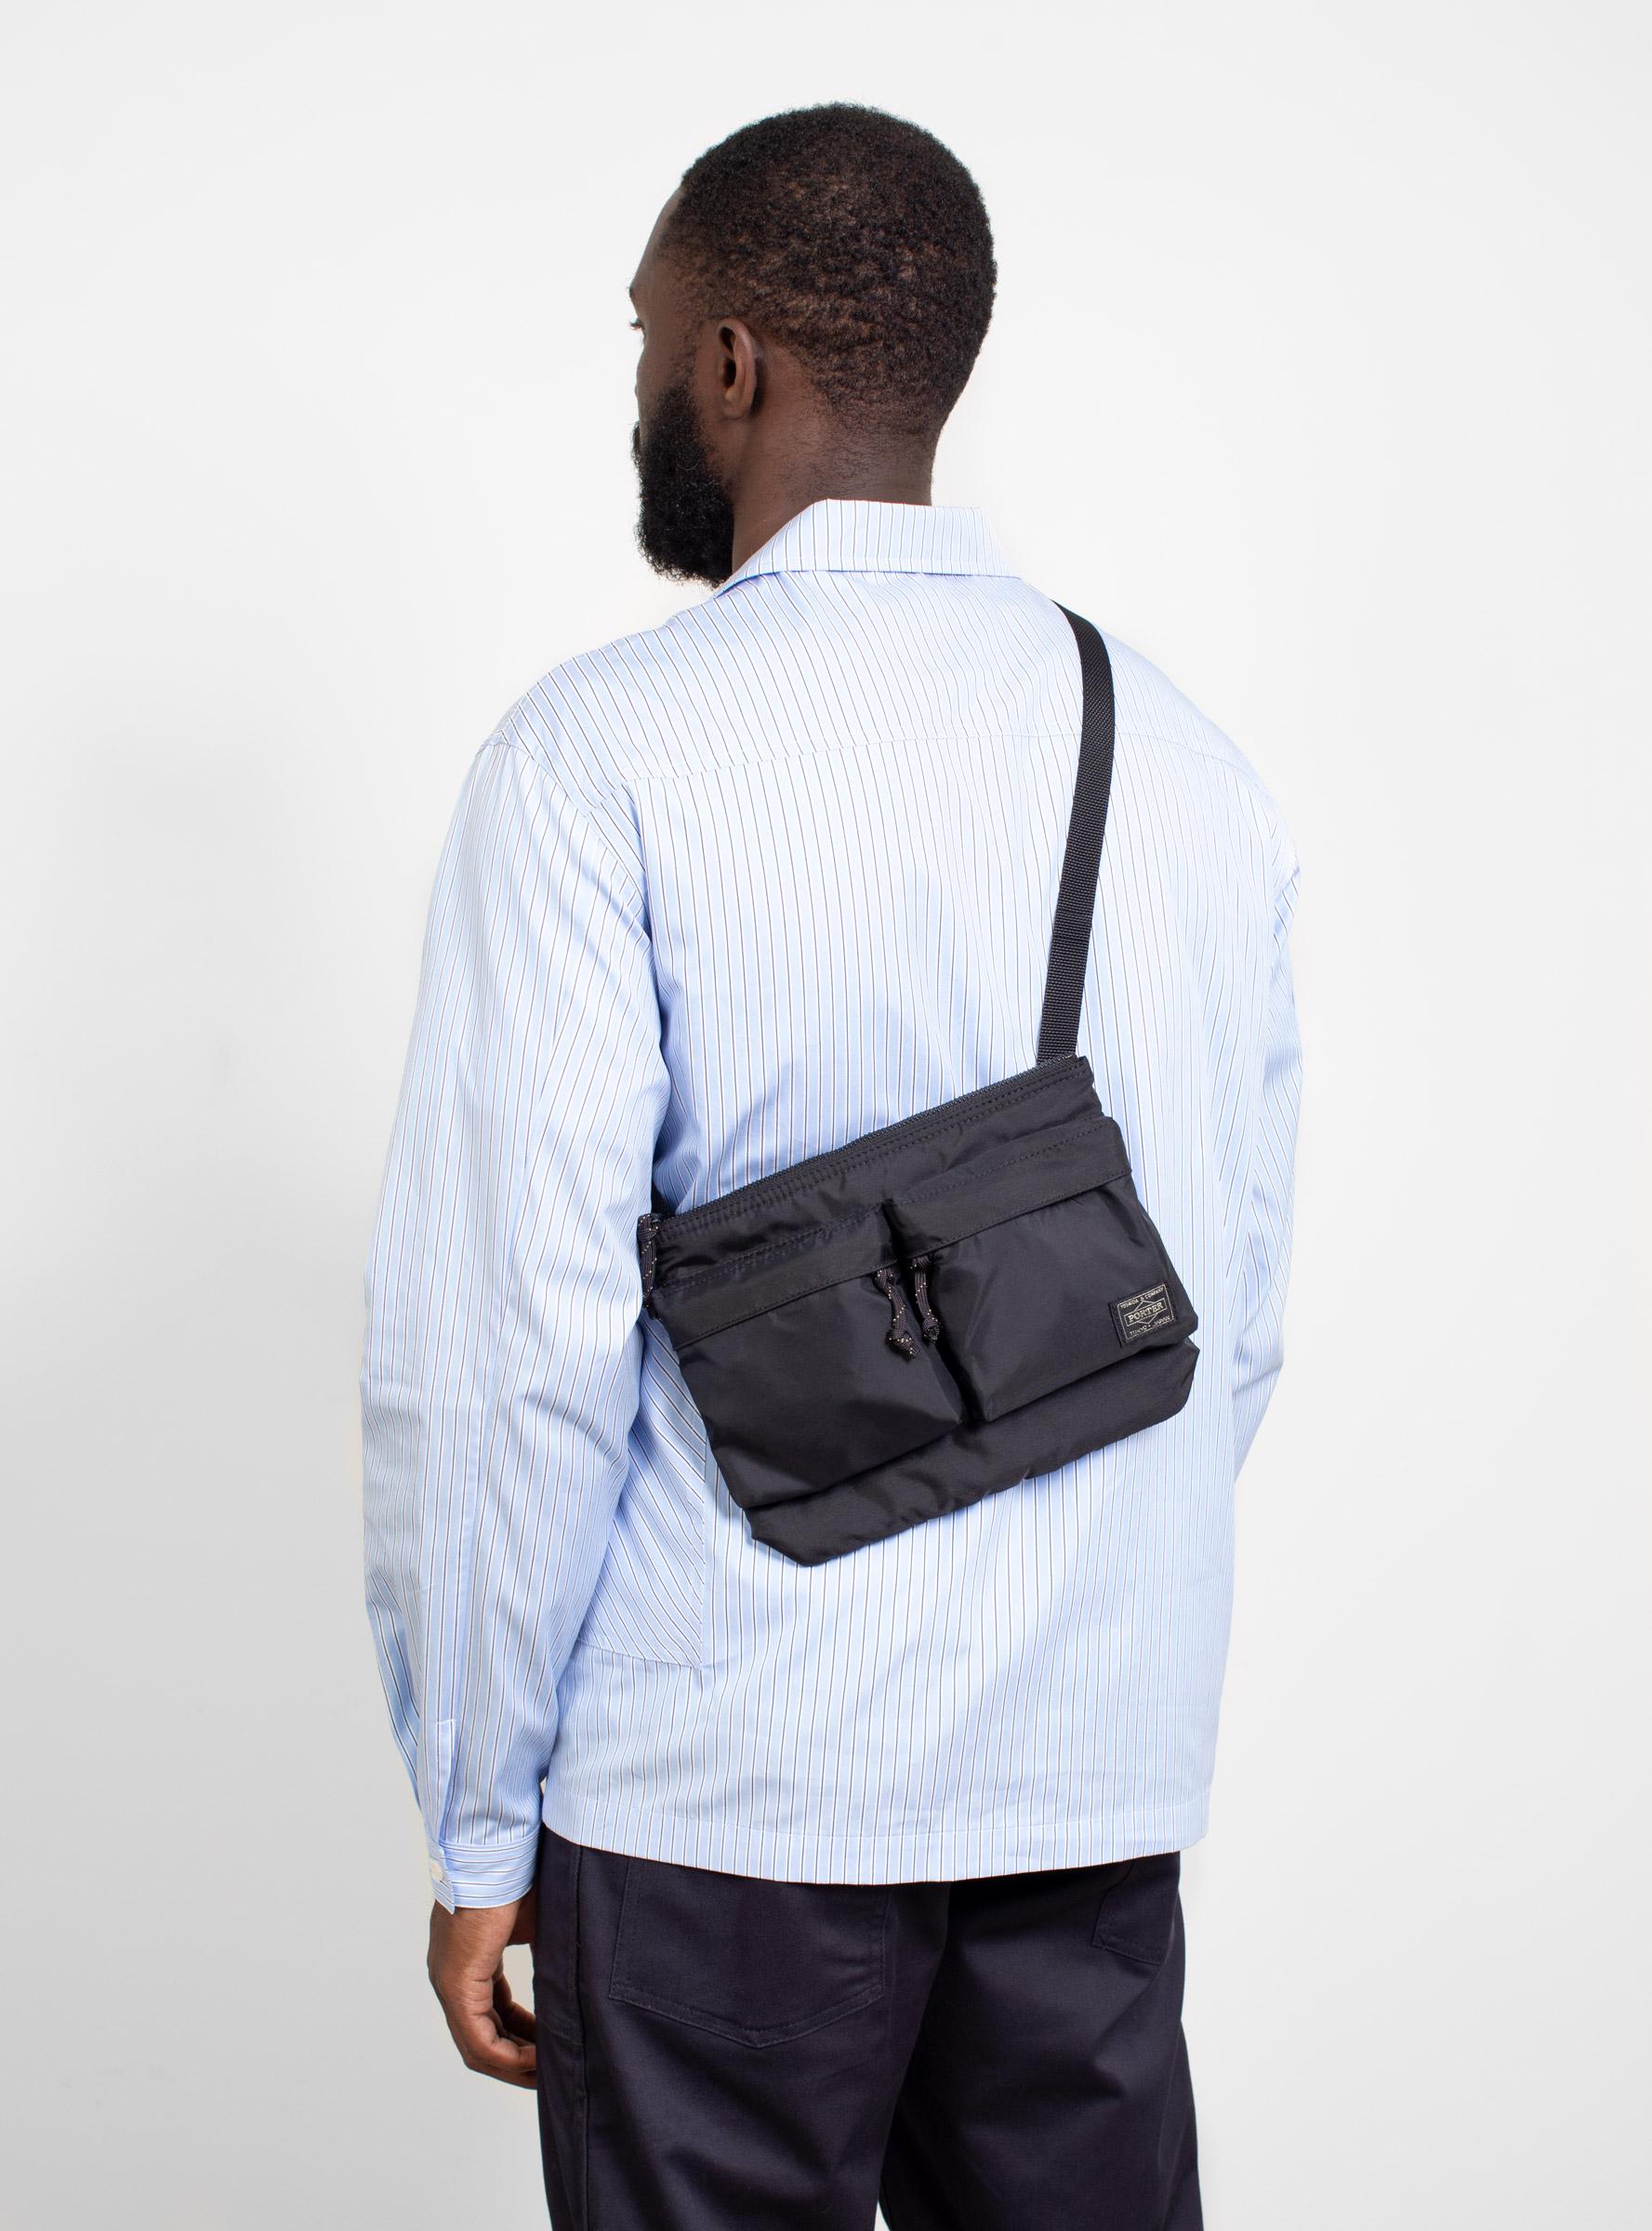 Porter Synthetic Force Shoulder Bag Black for Men - Save 31% - Lyst